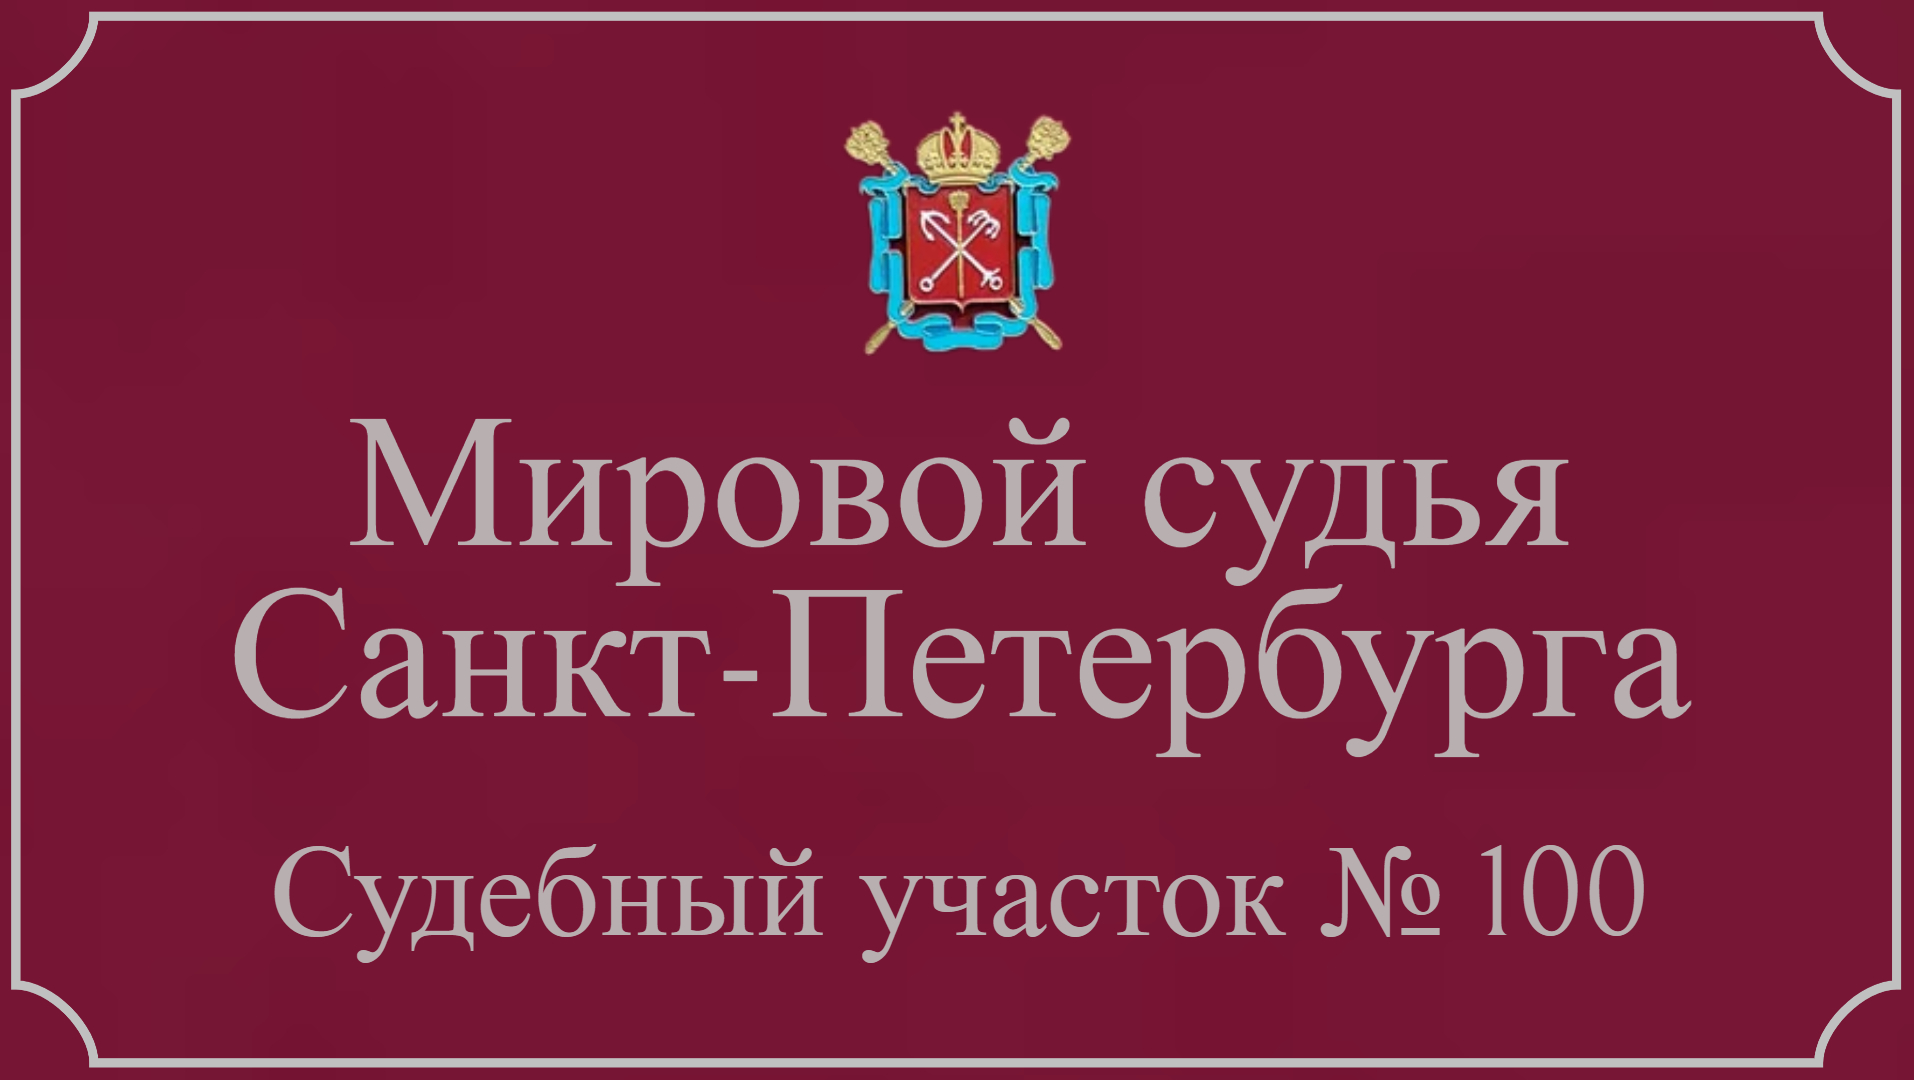 Информация по 100 судебному участку в Санкт-Петербурге.